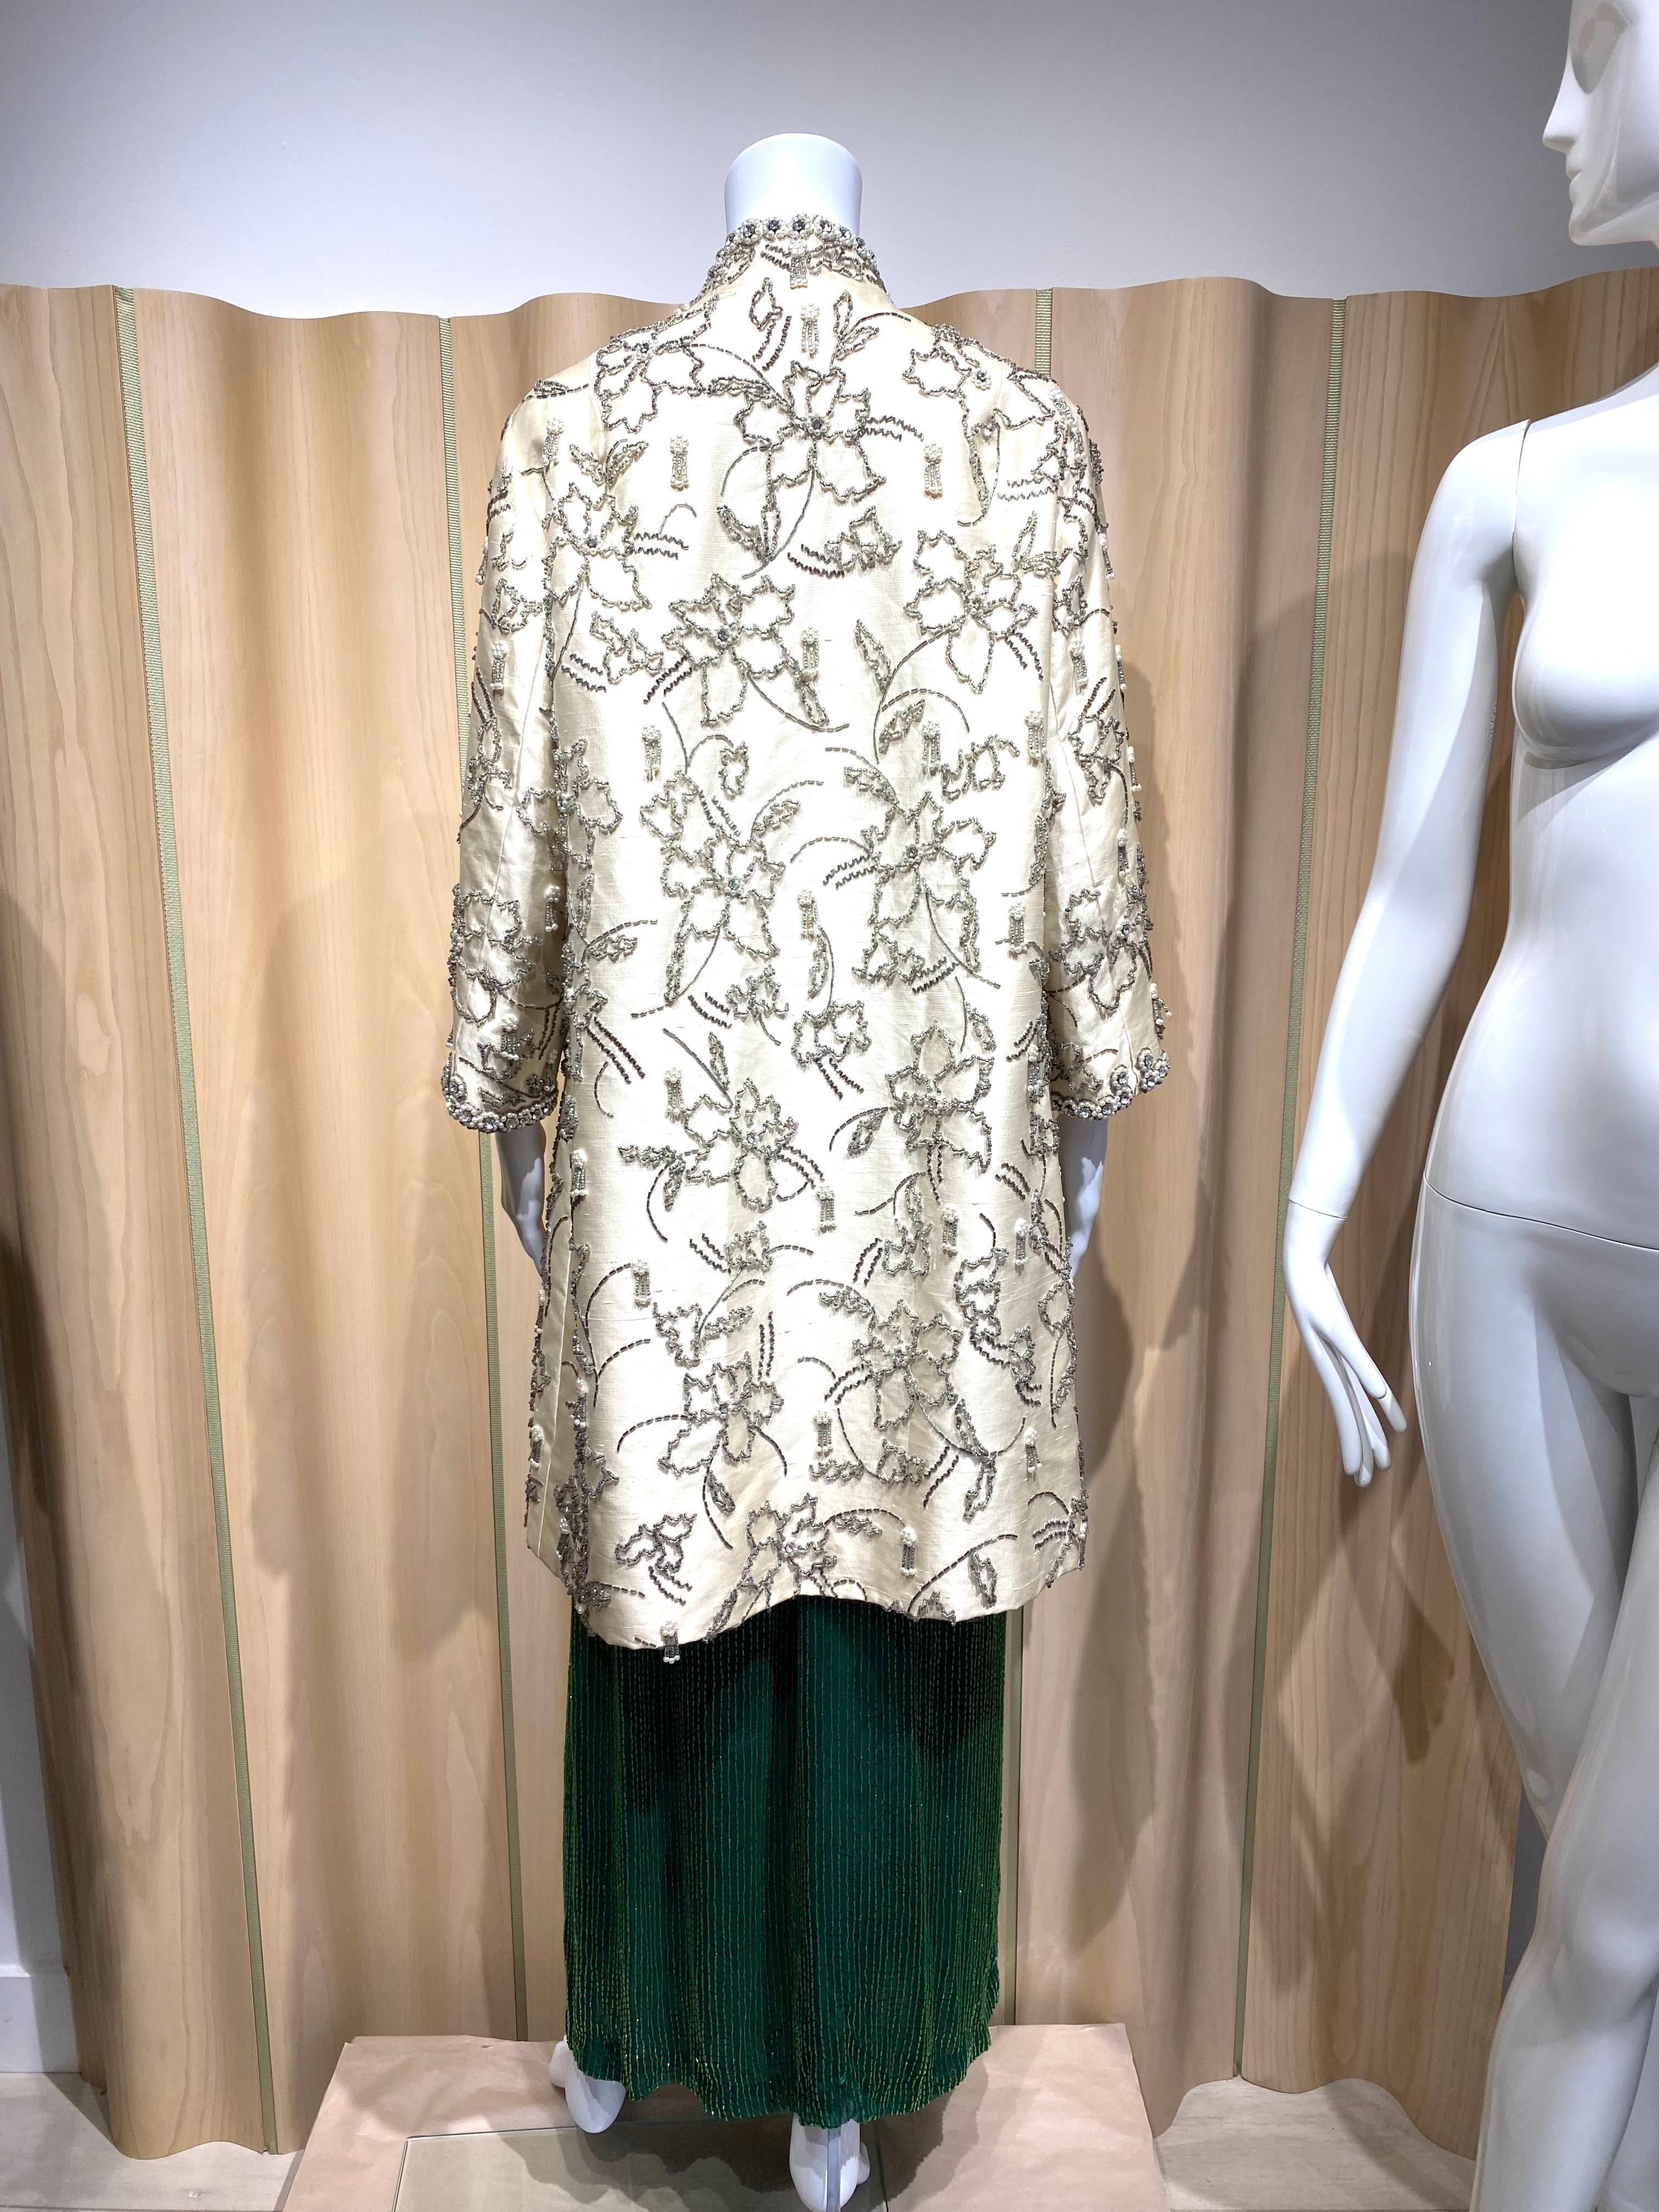 Manteau de soirée en soie crème des années 1960, rehaussé de perles et de strass. Manteau parfait pour une répétition de mariage ou un cocktail.
Tissu : soie
Grande taille
Mesure :
